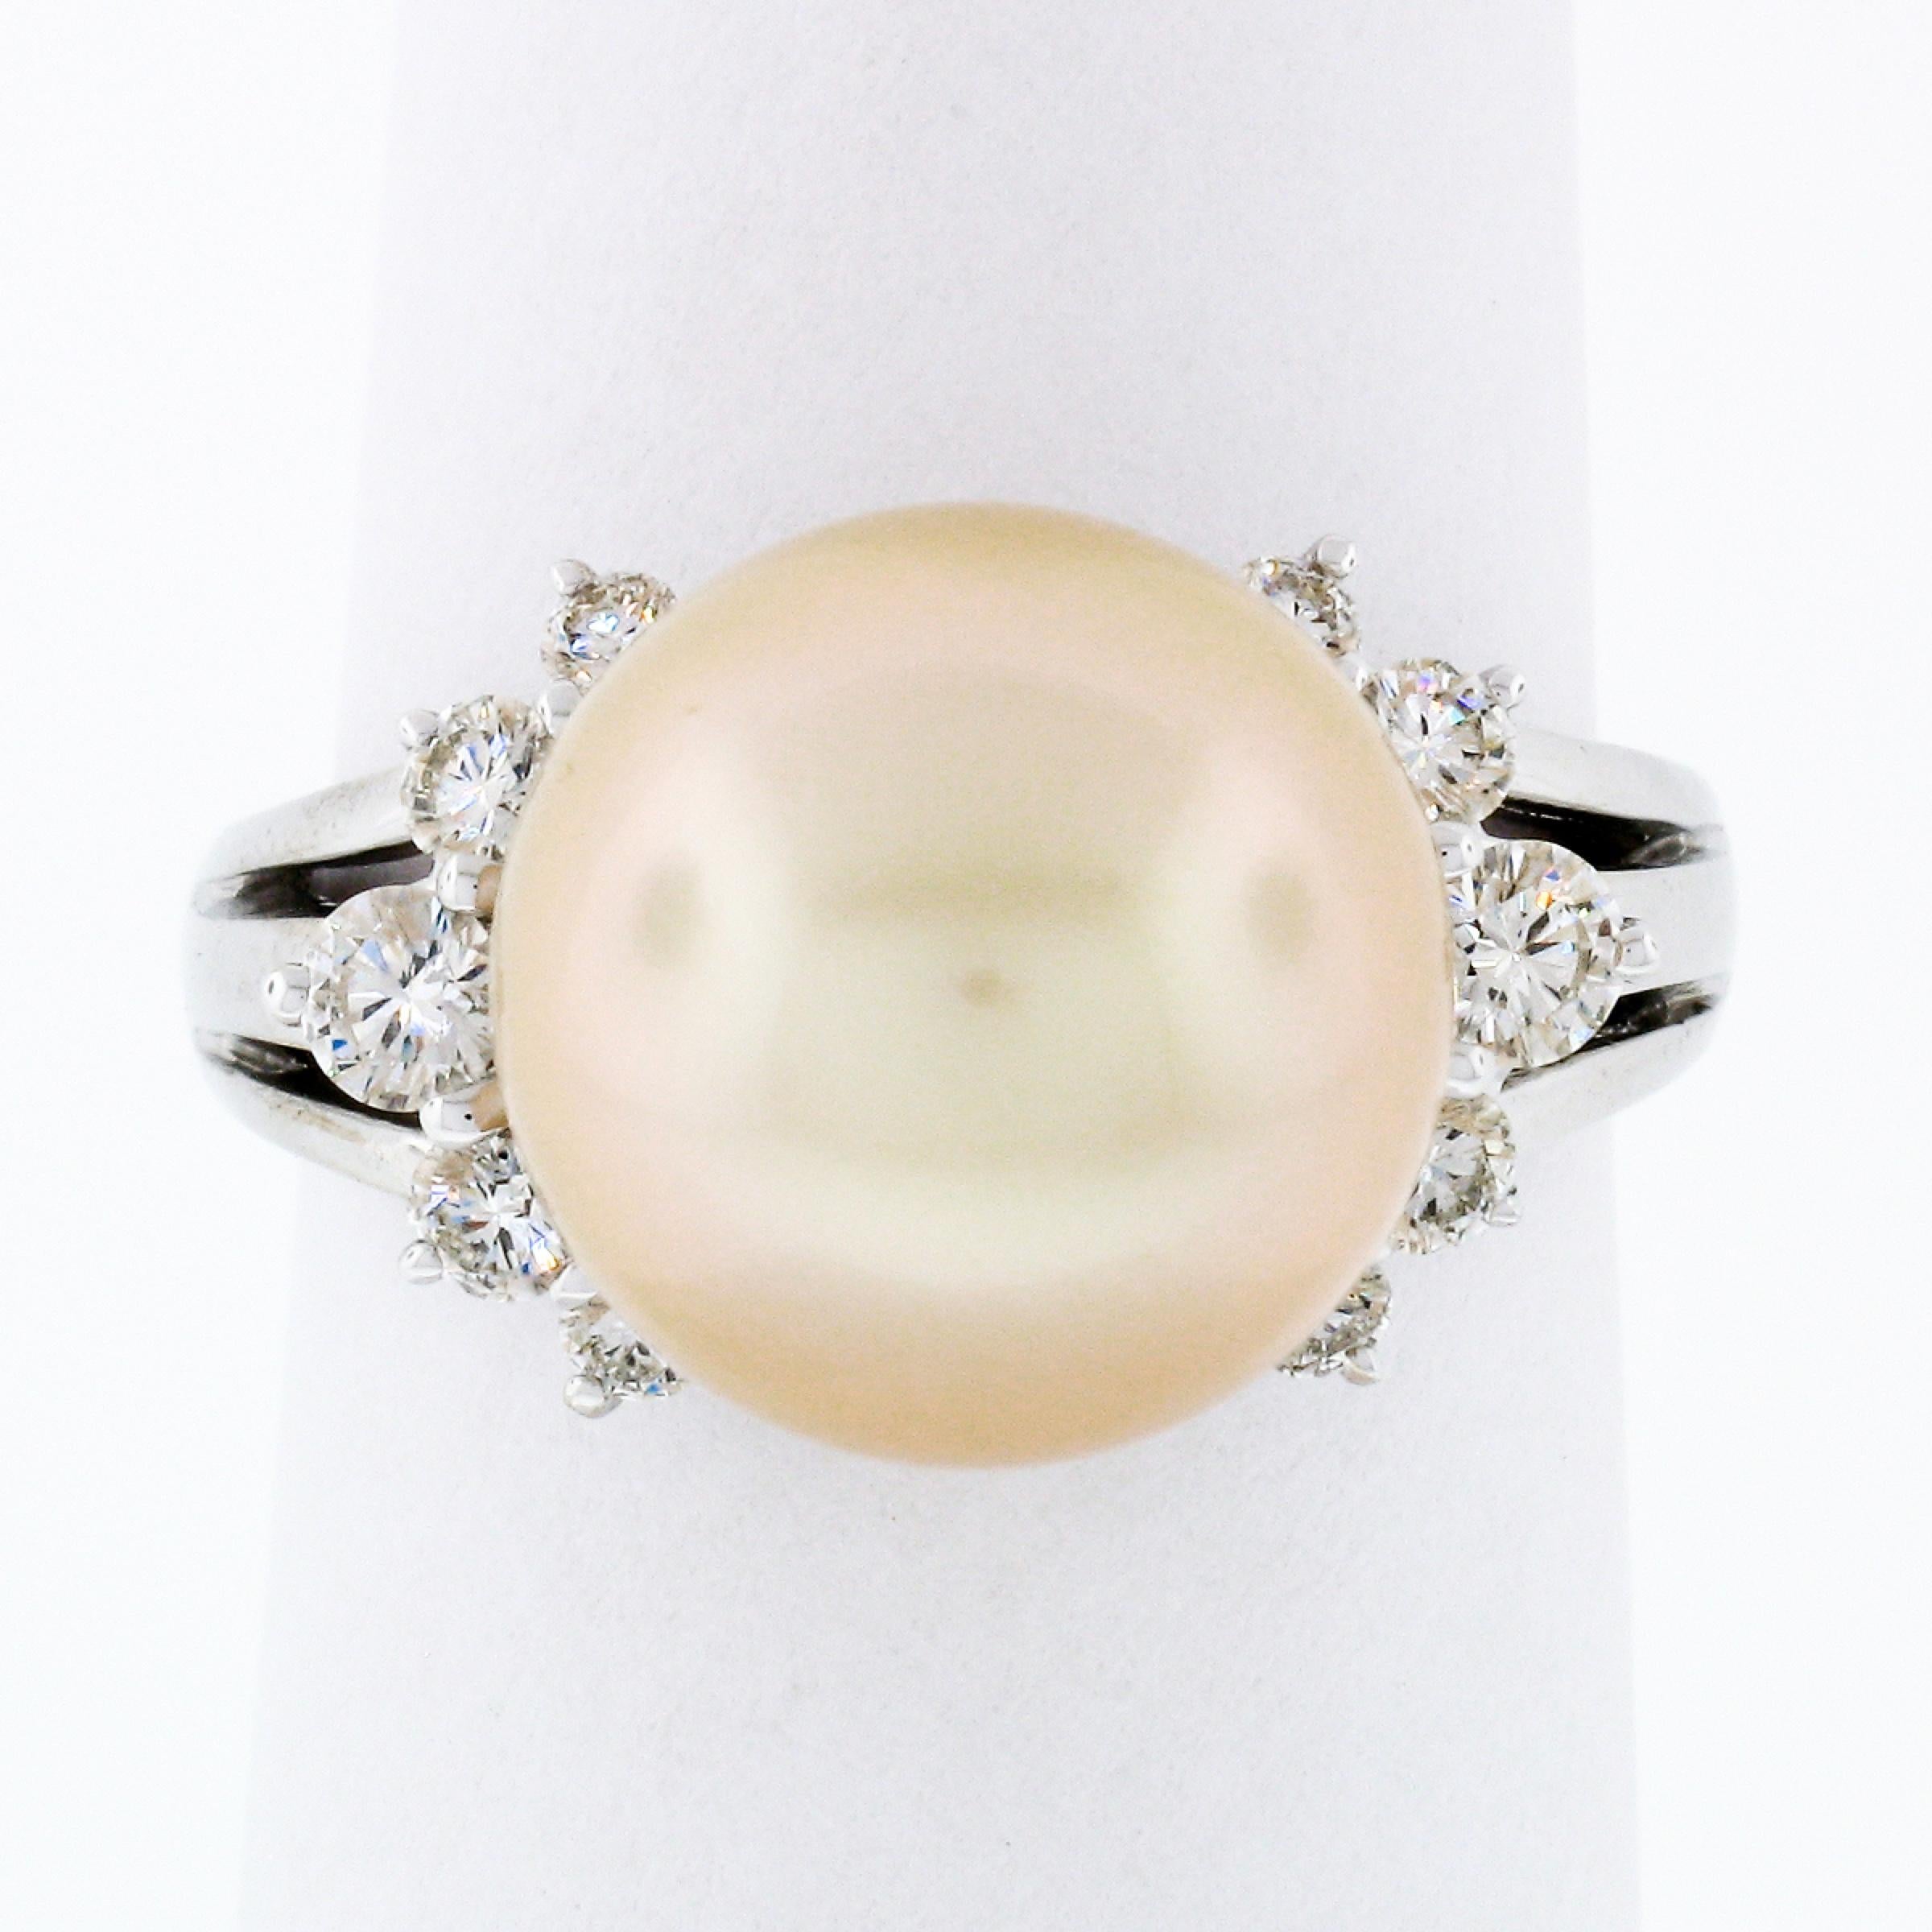 Cette magnifique bague solitaire en forme de perle est fabriquée en or blanc massif 18 carats et comporte 10 superbes accents en diamant sur les deux côtés. Cette perle fine présente une grande taille absolument attrayante et une couleur blanc doré